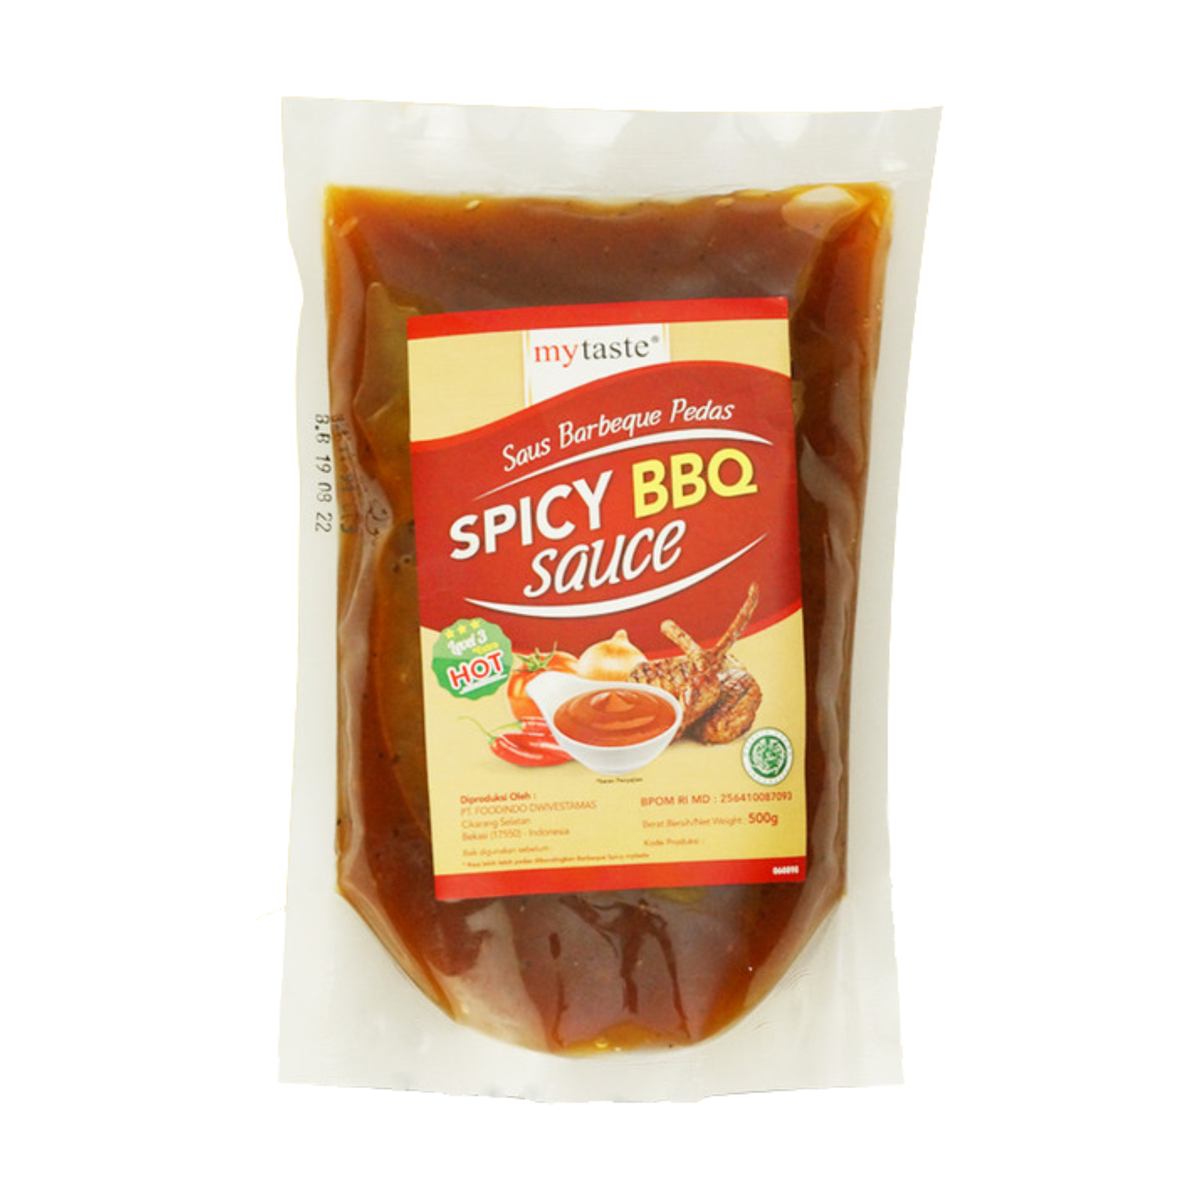 My Taste Spicy BBQ Sauce 500g